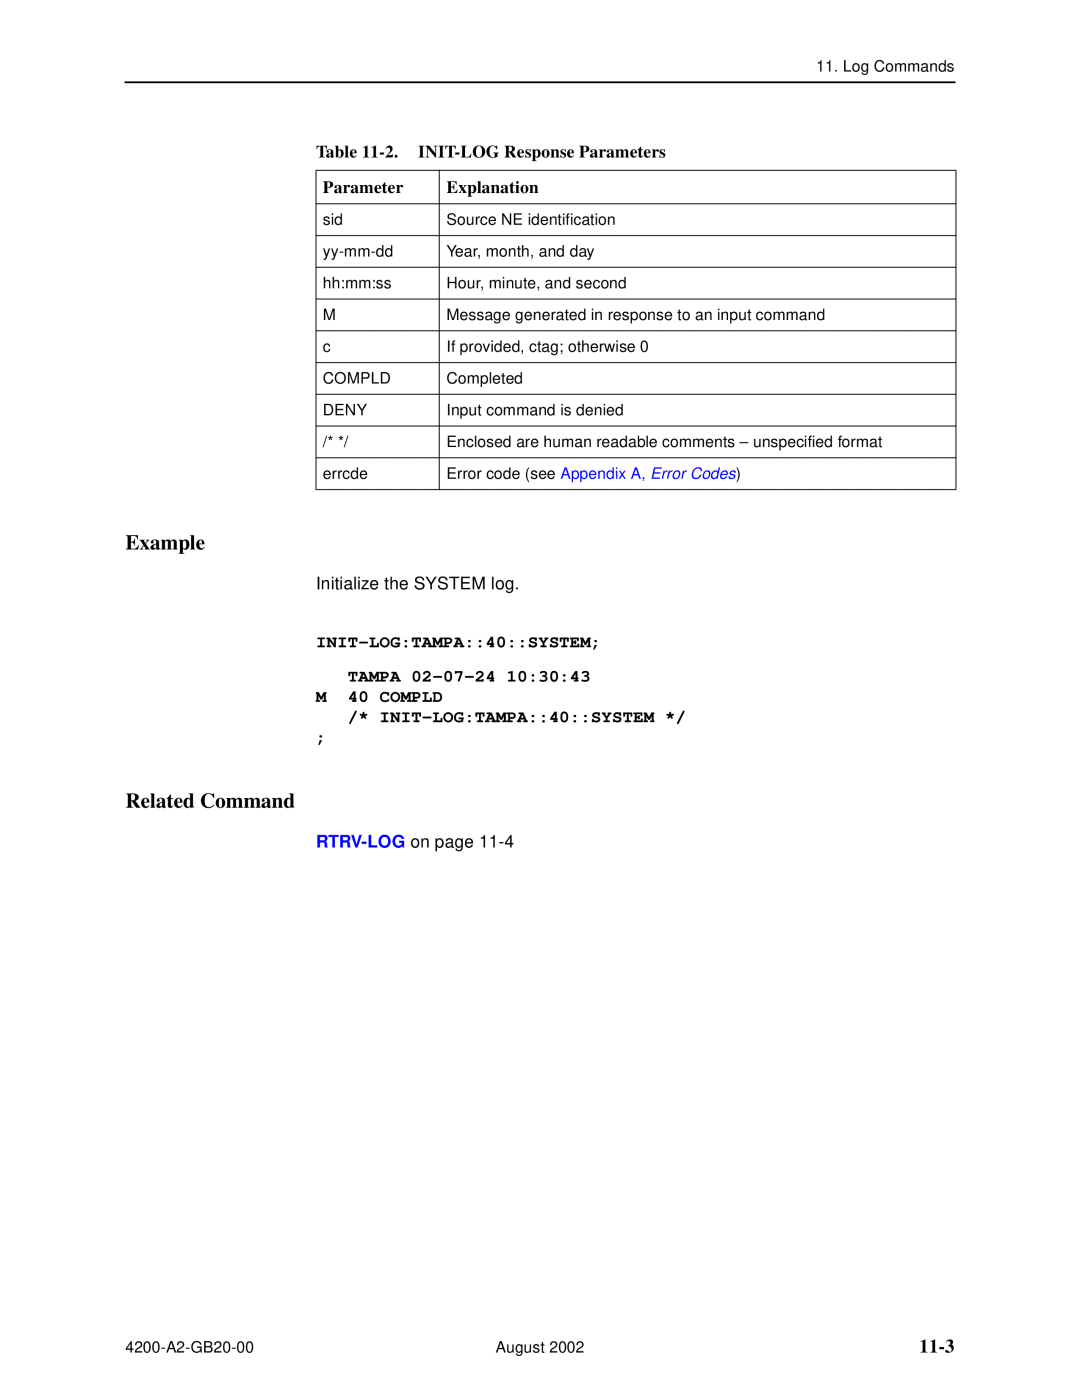 Paradyne 4200 manual 11-3, 2. INIT-LOG Response Parameters, INIT-LOGTAMPA40SYSTEM TAMPA 02-07-24 M 40 COMPLD, Example 